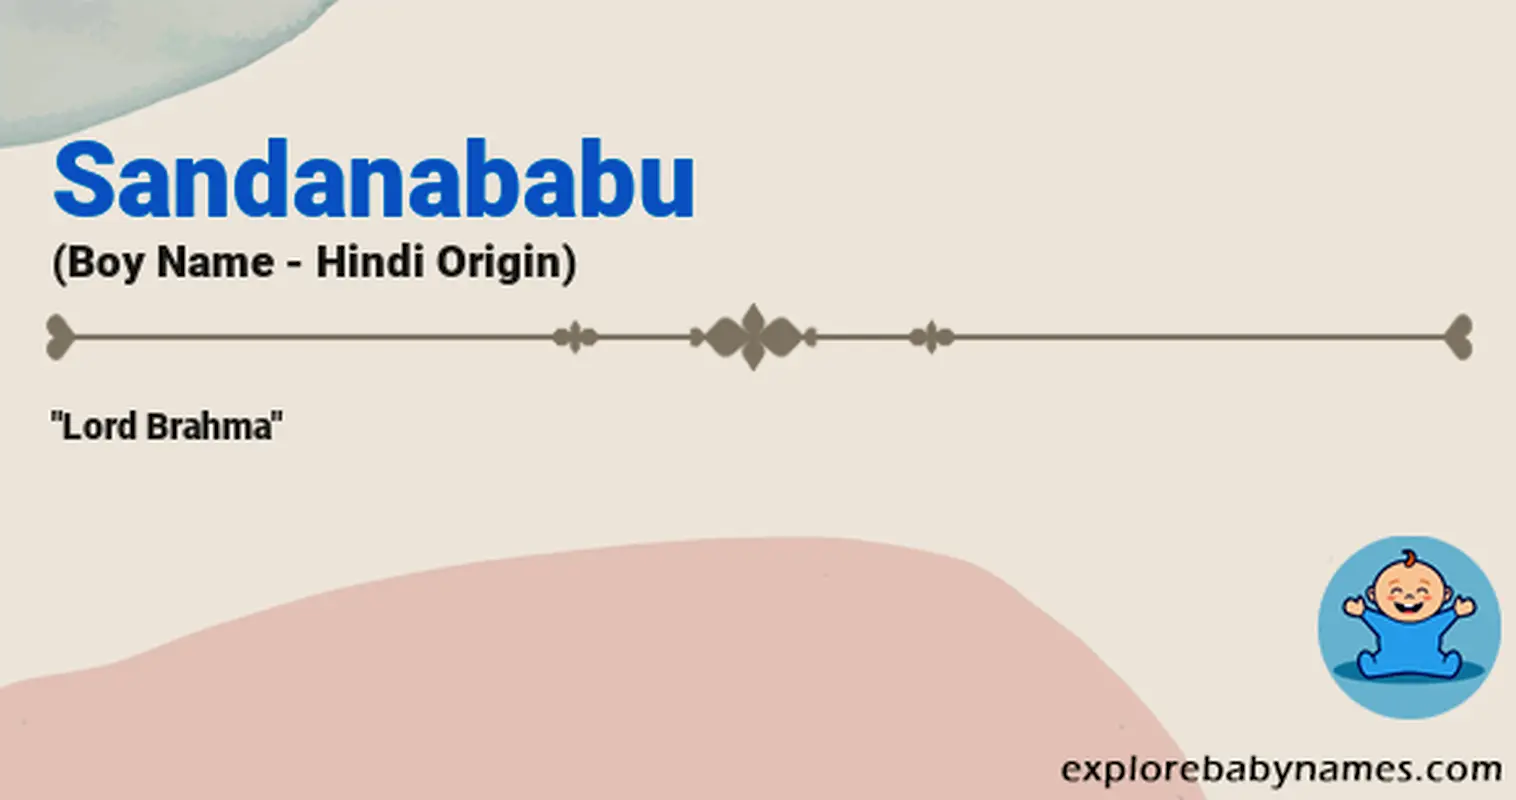 Meaning of Sandanababu